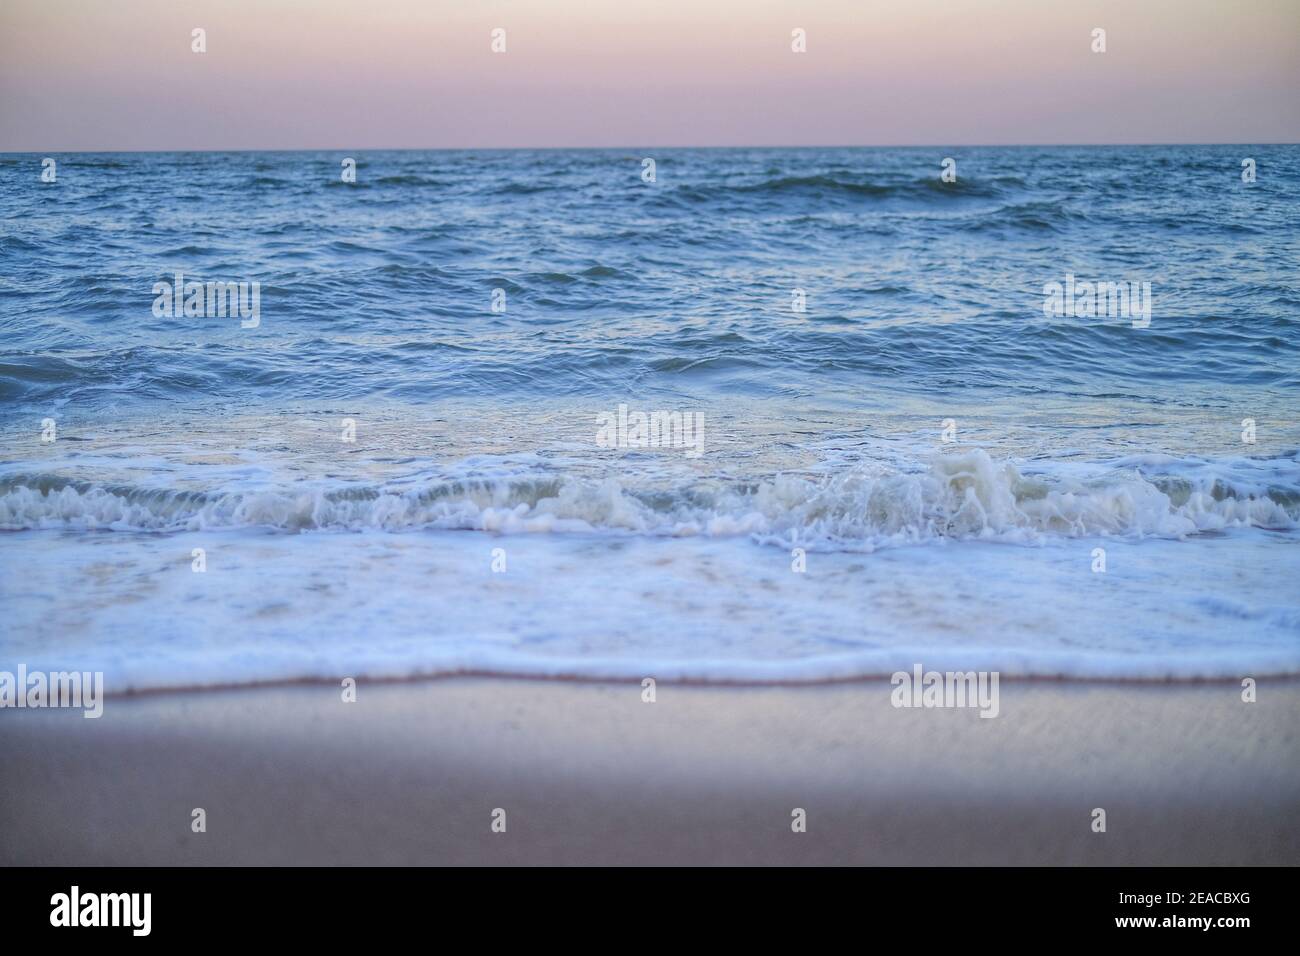 Une photo d'un vase vue sur la mer depuis le bord d'une plage juste avant le coucher du soleil avec lumière dorée dedans le ciel et l'eau de mer mousseuse comme il se débarque la plage de sable Banque D'Images